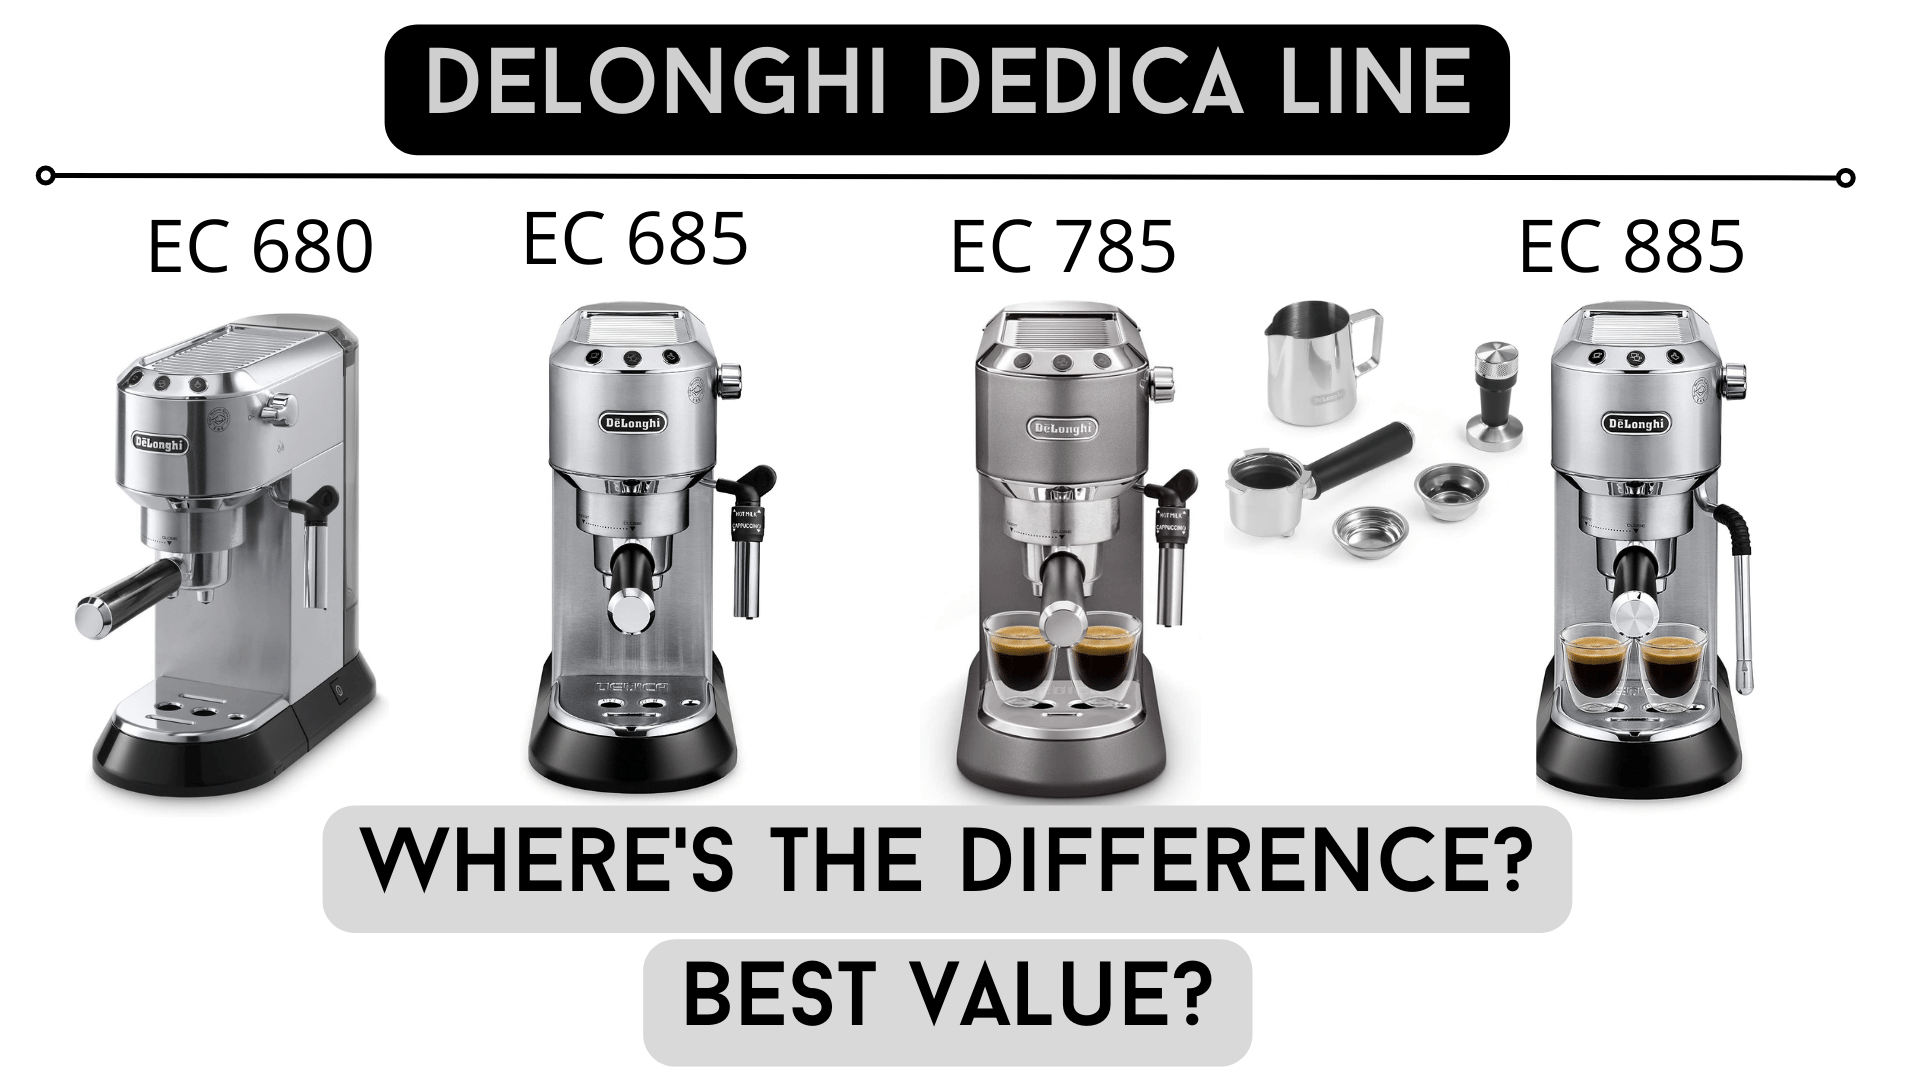 Delonghi Dedica models, EC680, EC685, EC885